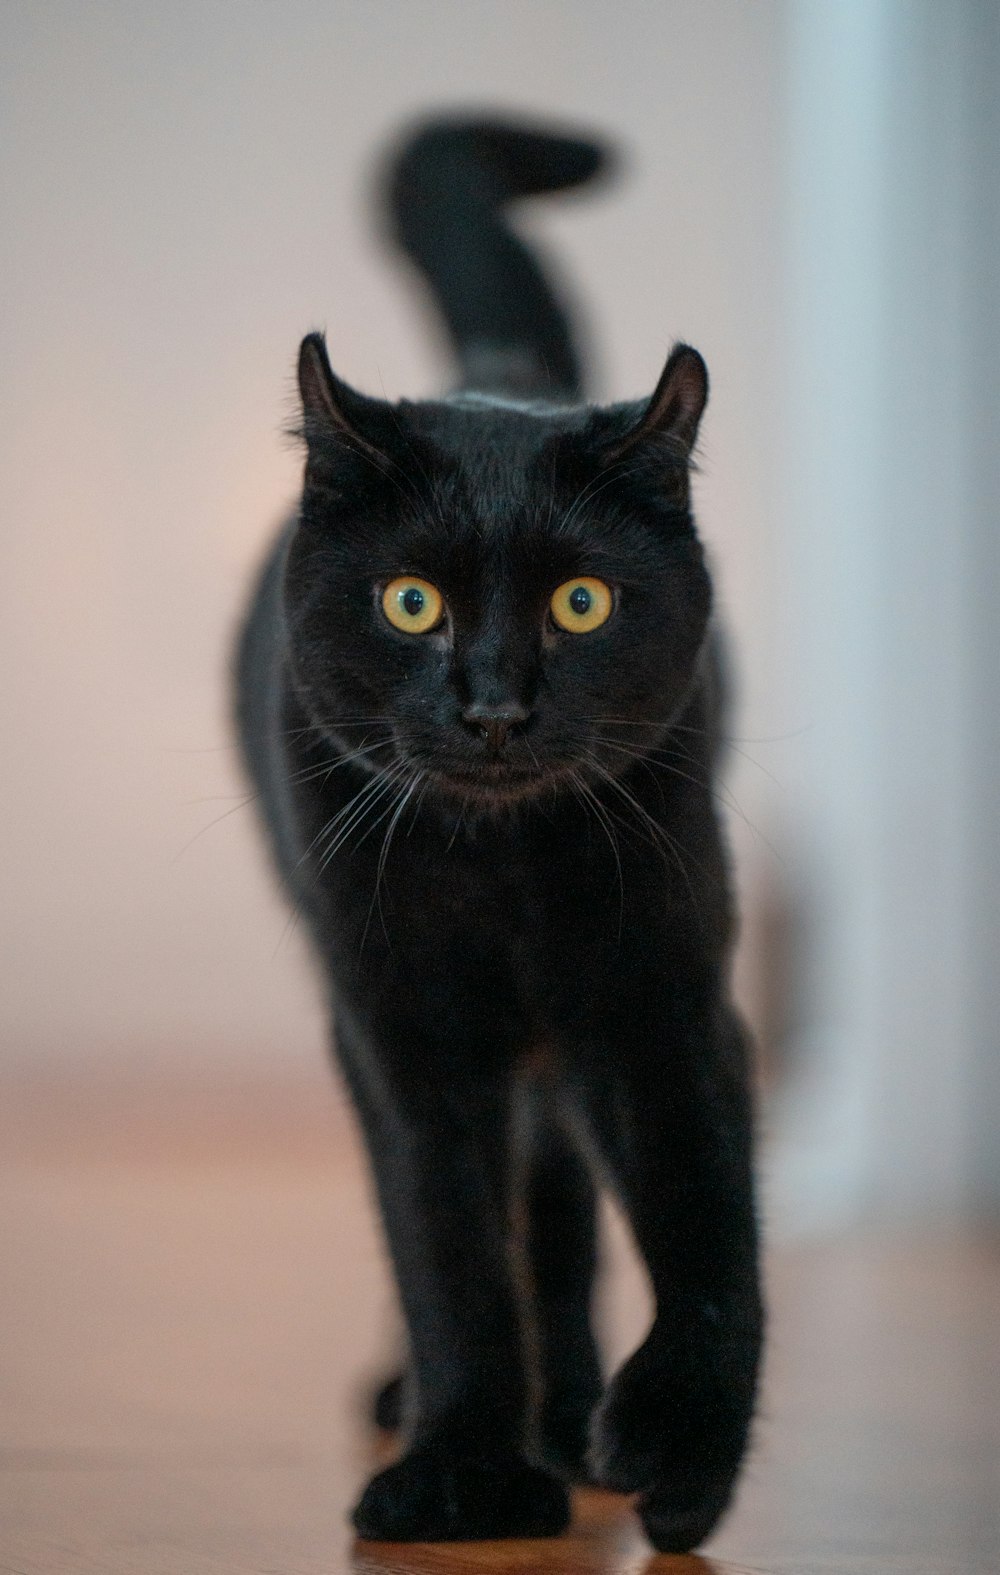 a black cat walking across a wooden floor